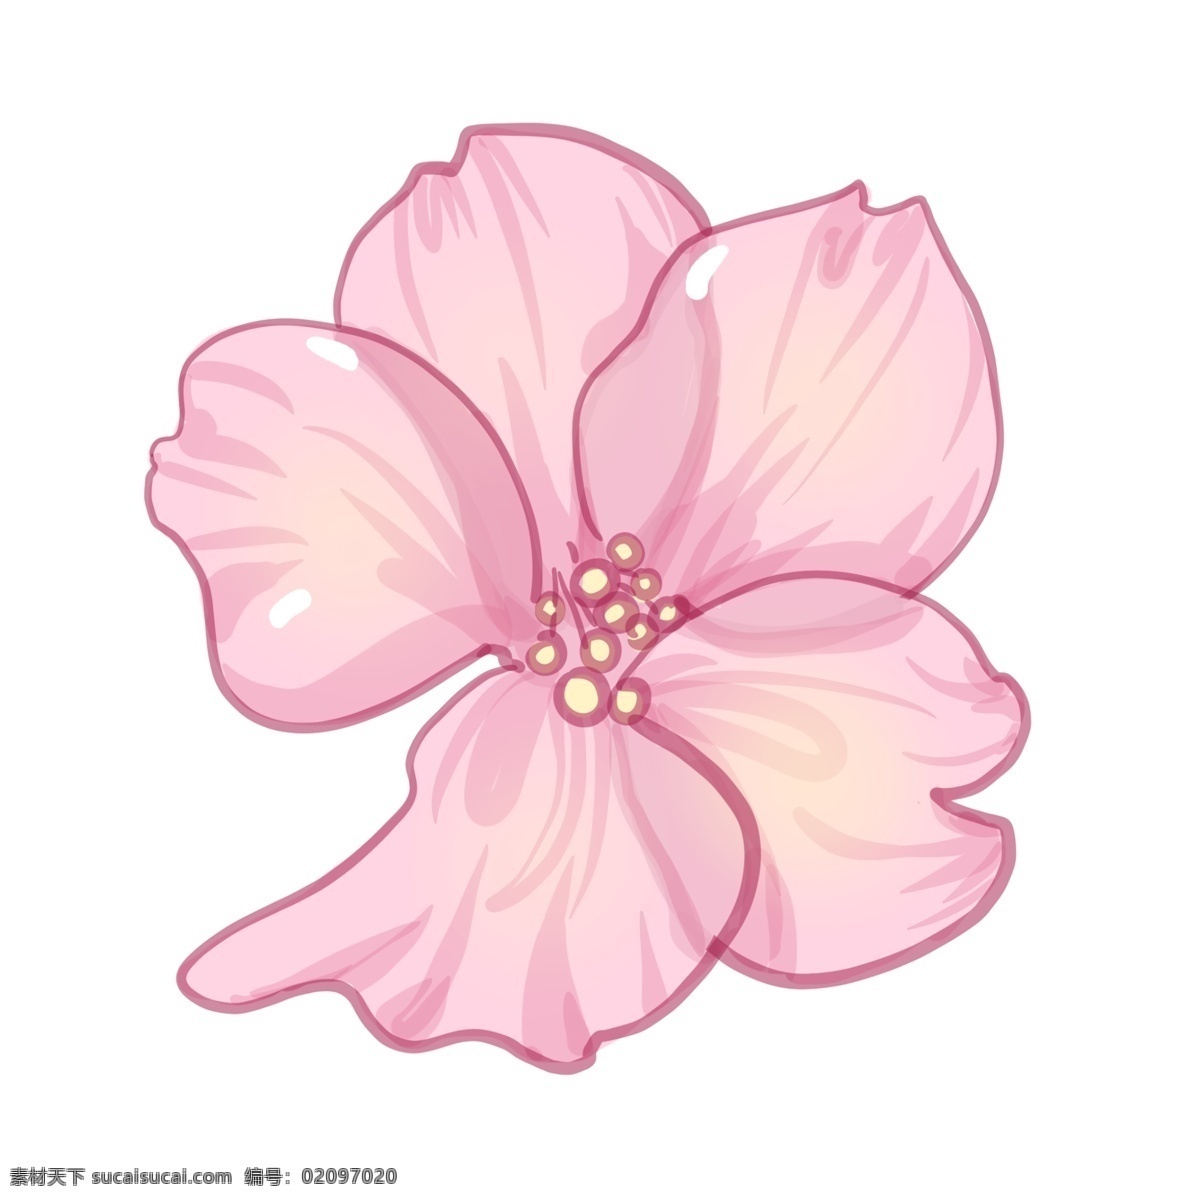 朵 盛开 樱花 插画 花朵 粉色花朵 鲜花 花卉 植物 红色樱花 盛开的樱花 黄色花蕊 粉色花瓣